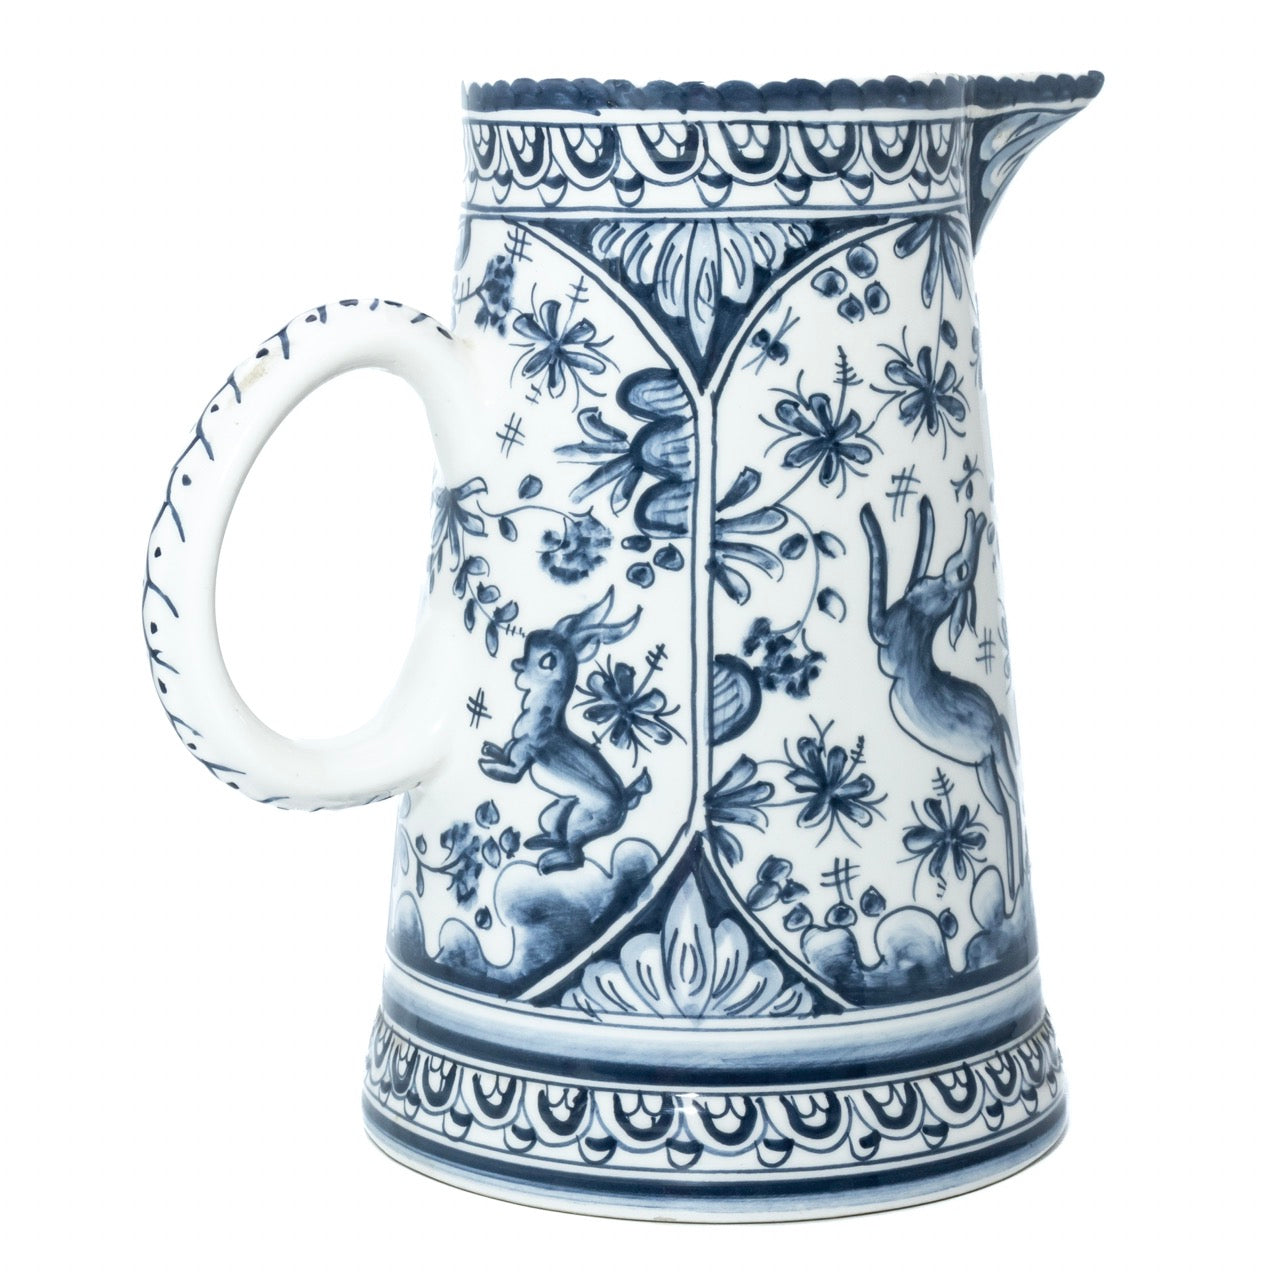 Comprar jarrón de porcelana online - Magado Joyas & Antiques